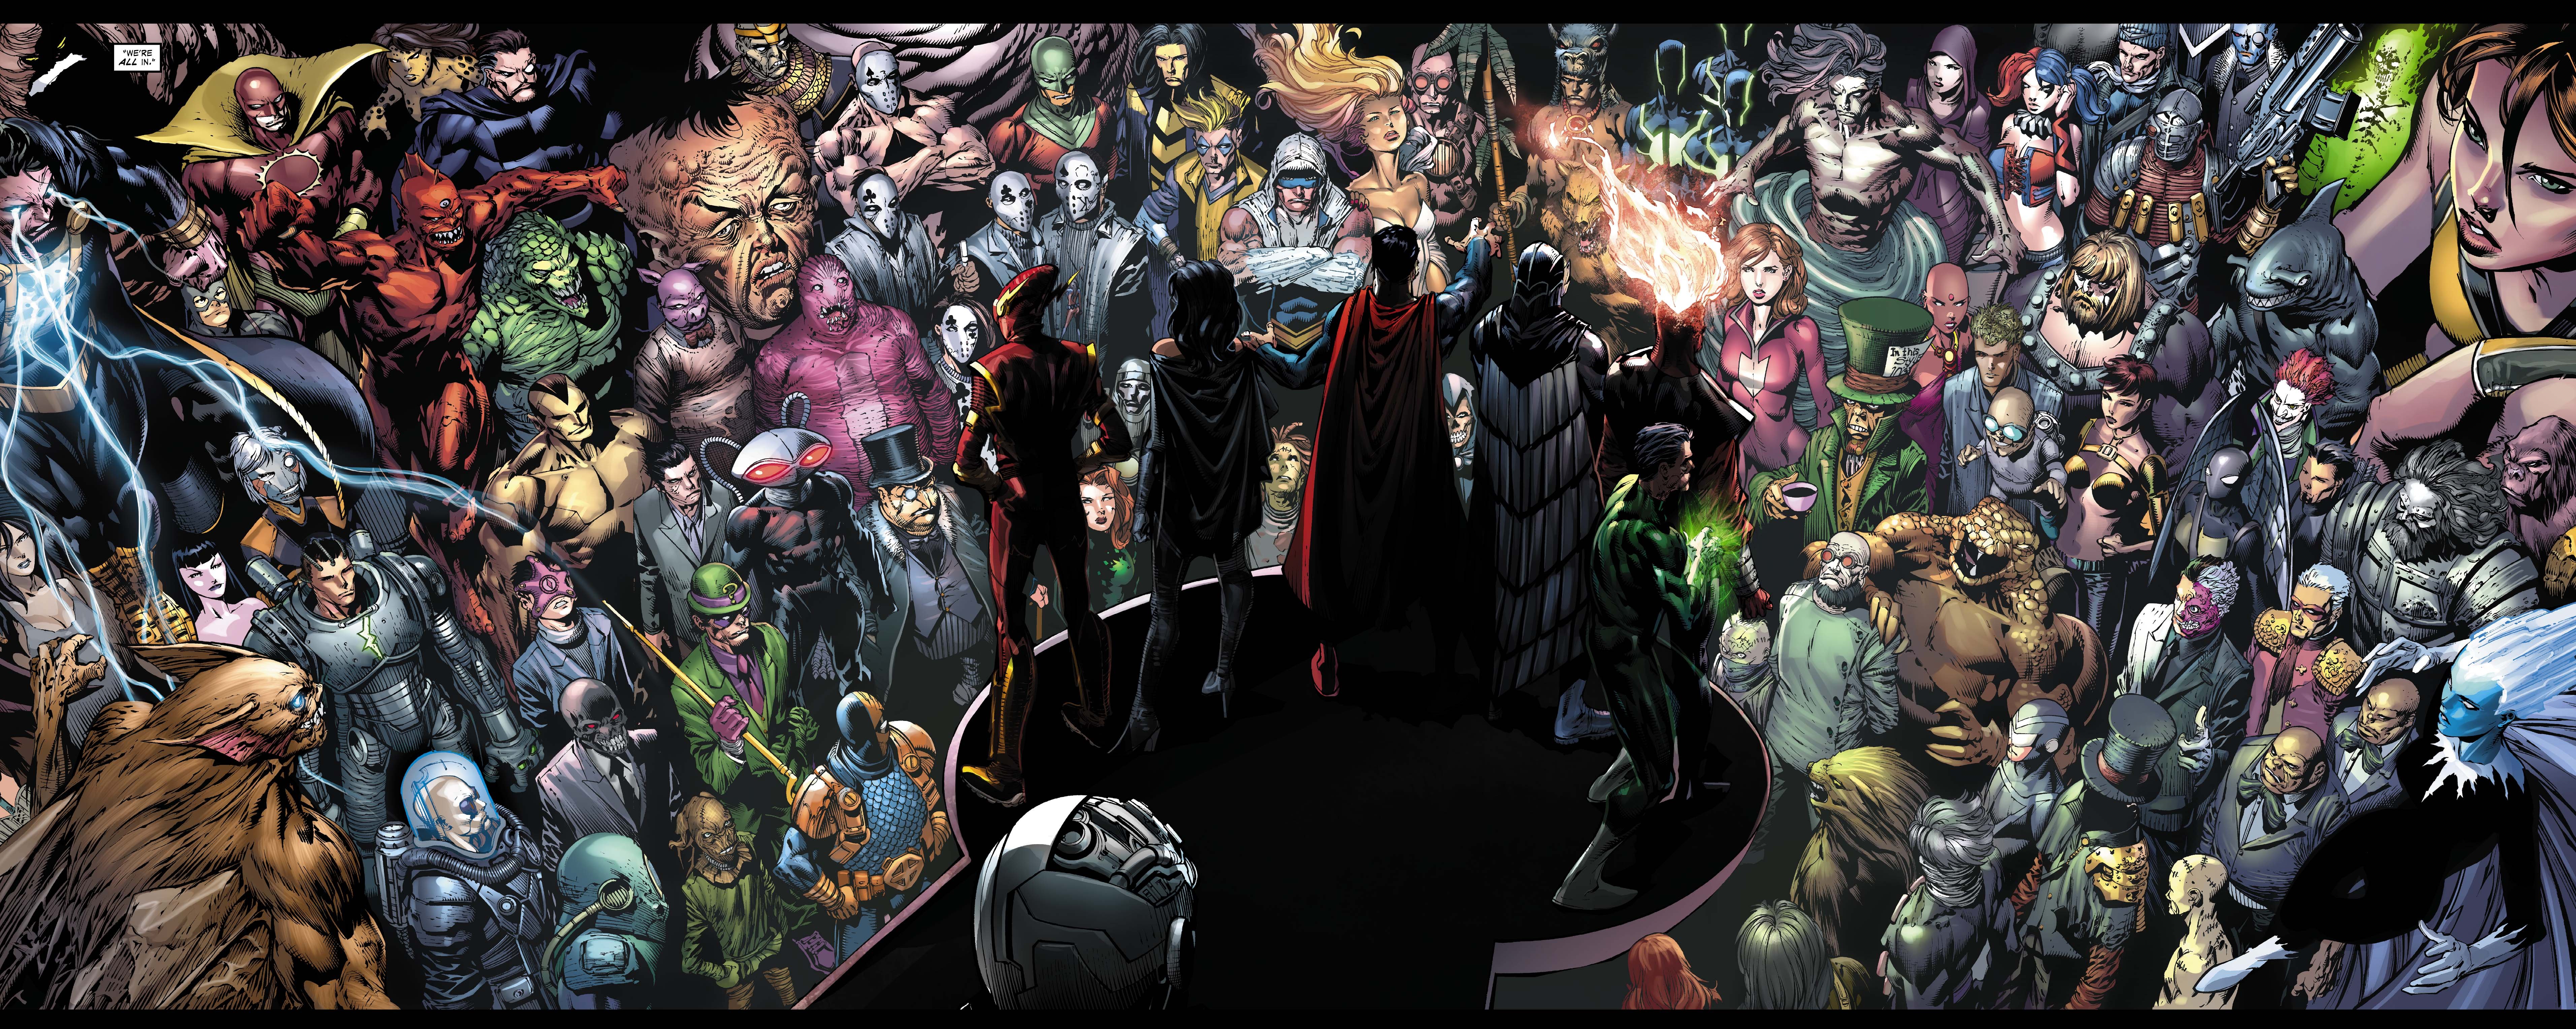 arkham, War, Forever, Evil, D c, Dc comics, Crossover, Batman,  2 Wallpaper